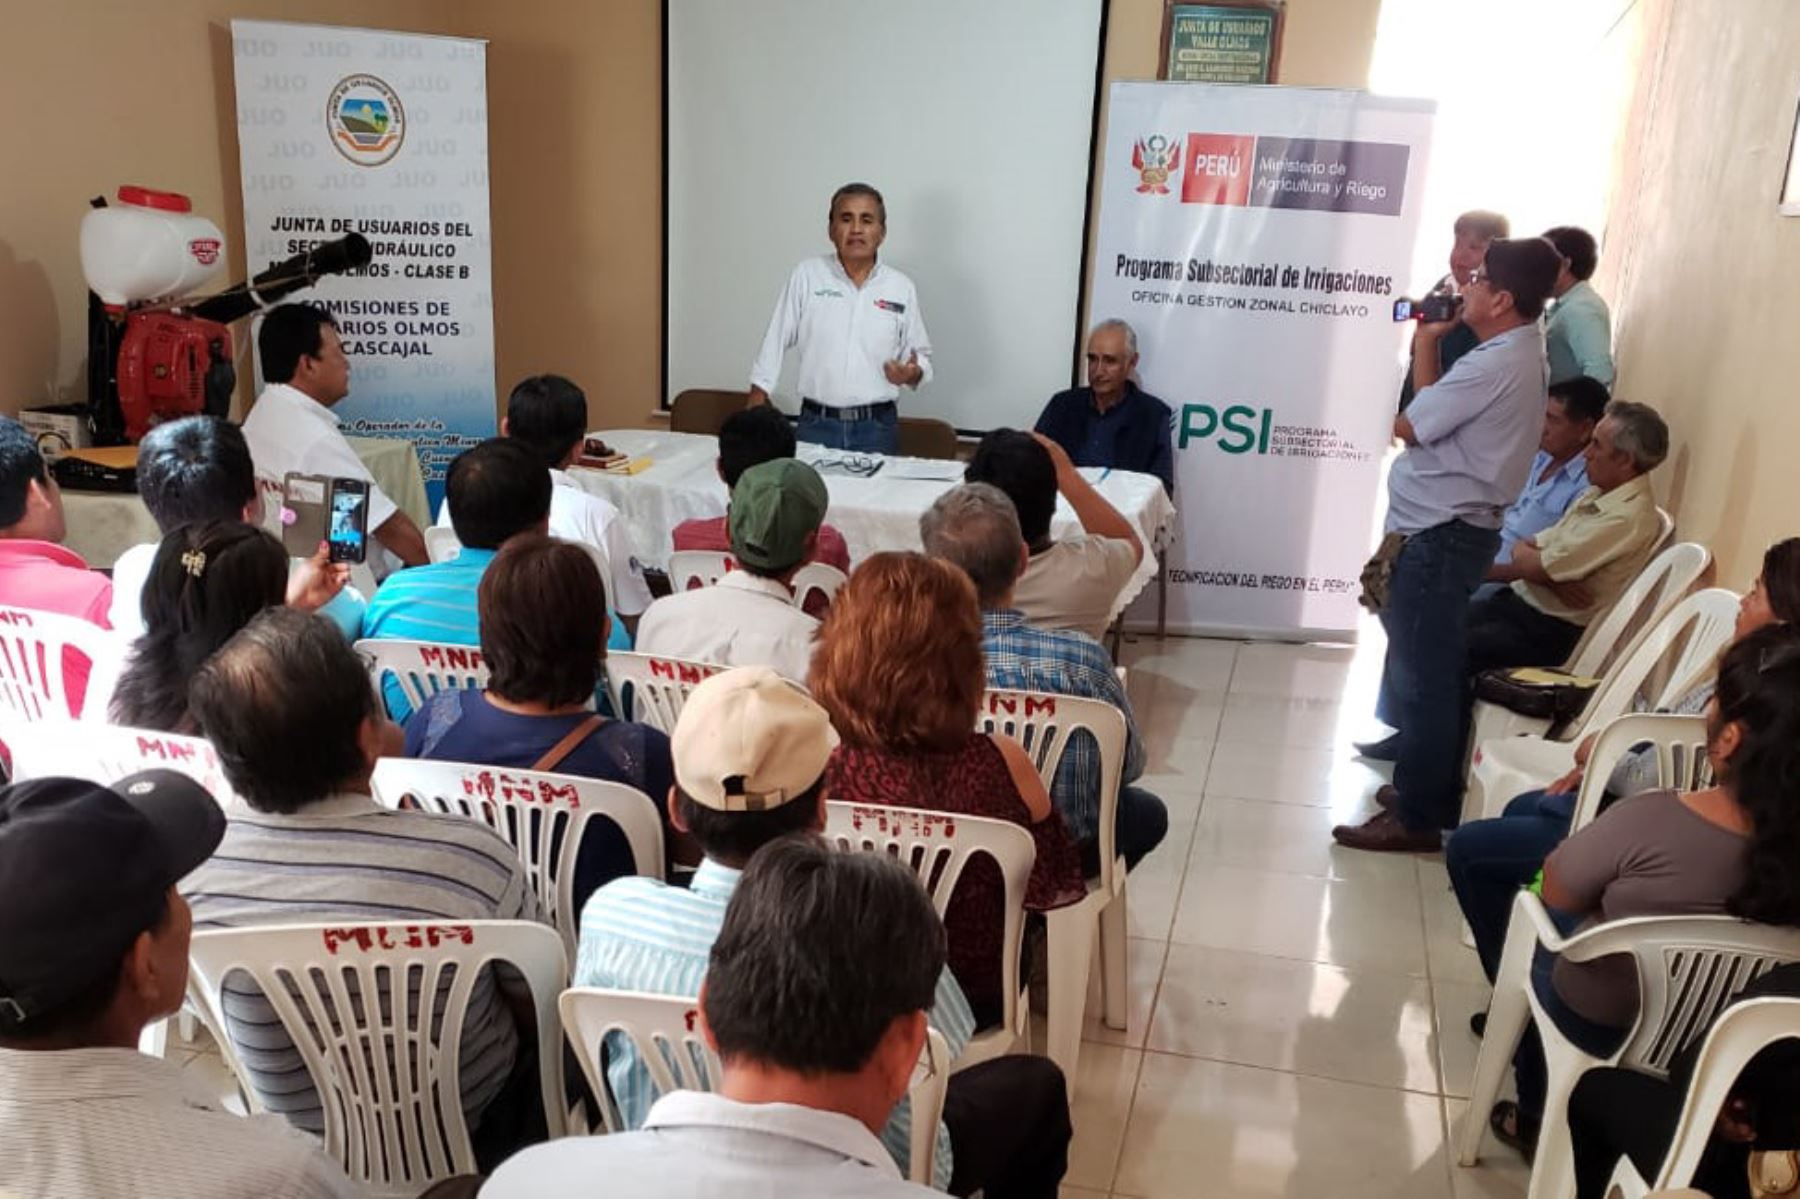 Lambayeque: Ministerio de Agricultura y Riego asume proyecto de Valle Viejo en Olmos